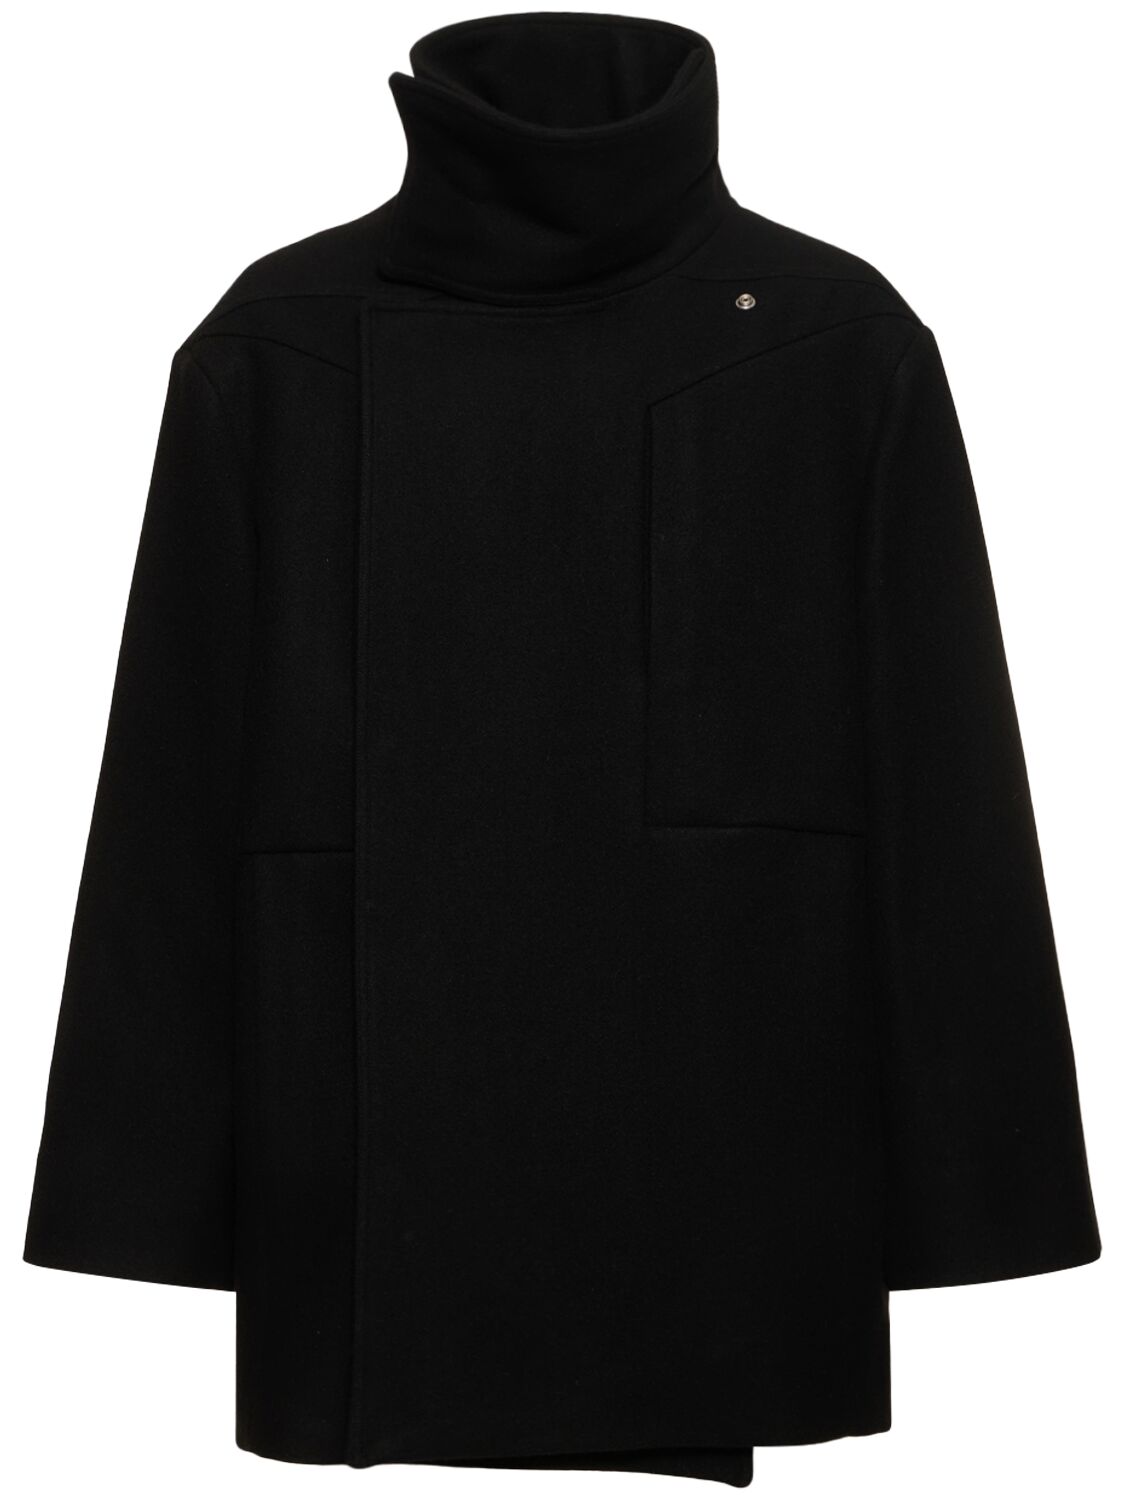 Luxor Wool Caban Jacket – MEN > CLOTHING > COATS